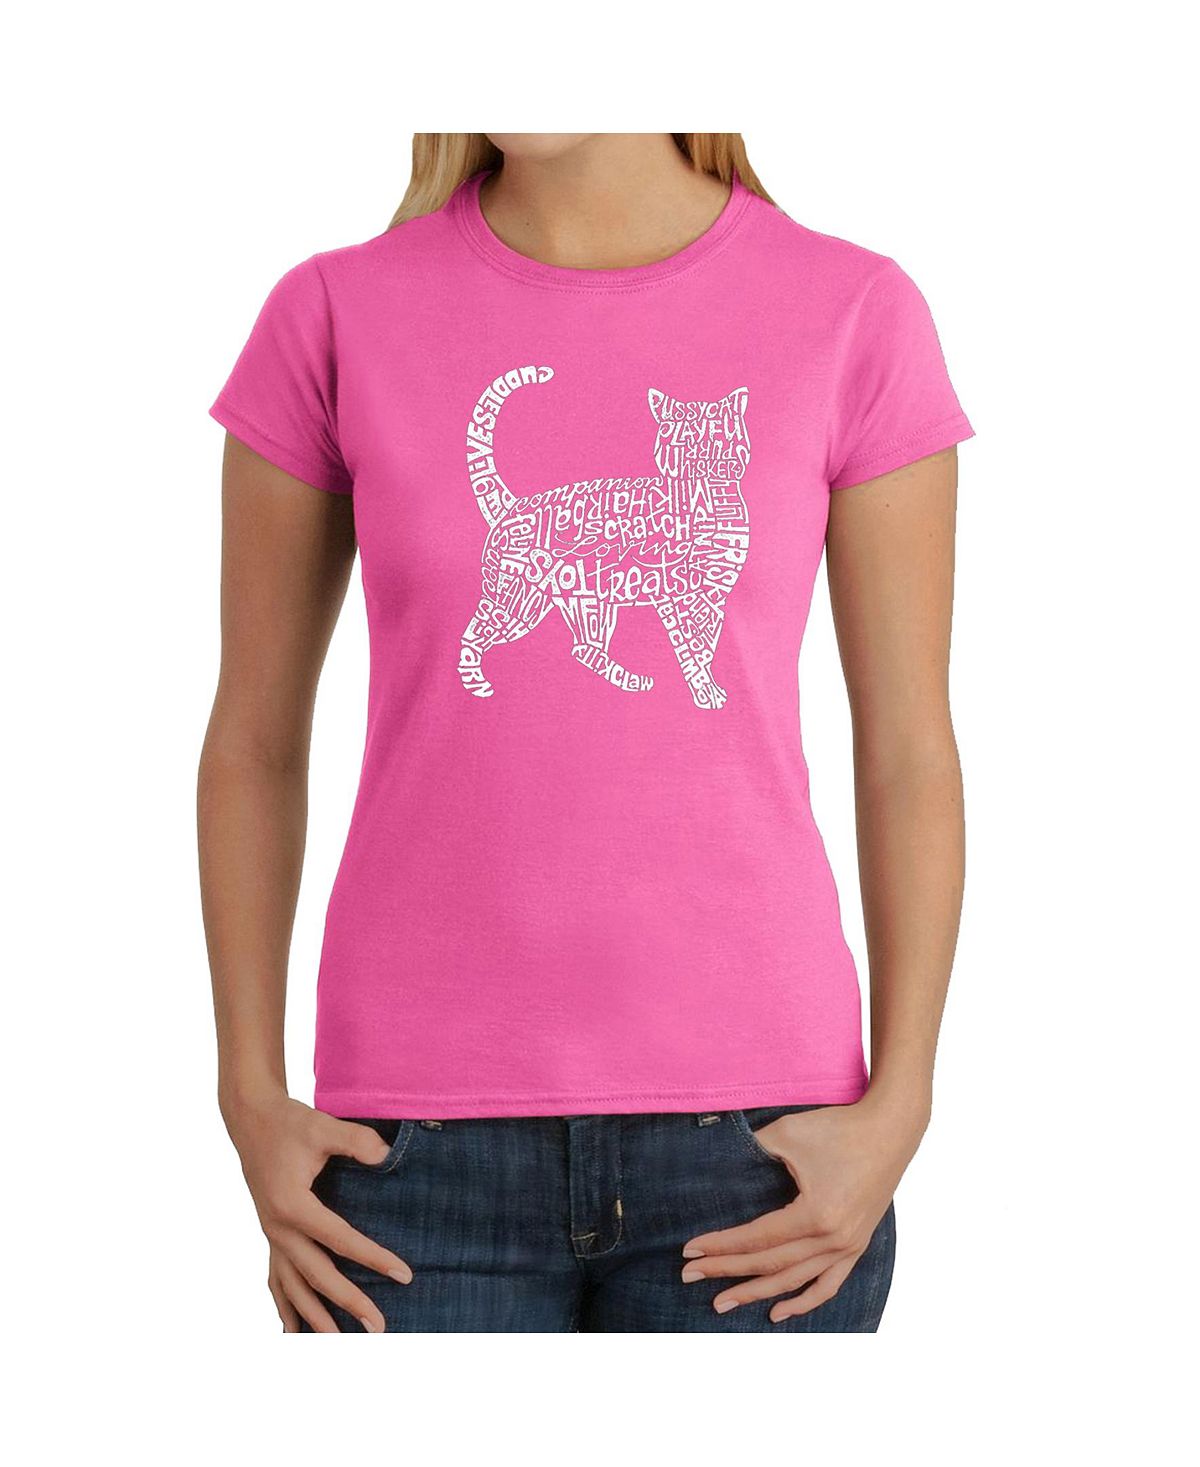 Женская футболка word art - кошка LA Pop Art, розовый женская футболка word art хамса la pop art розовый